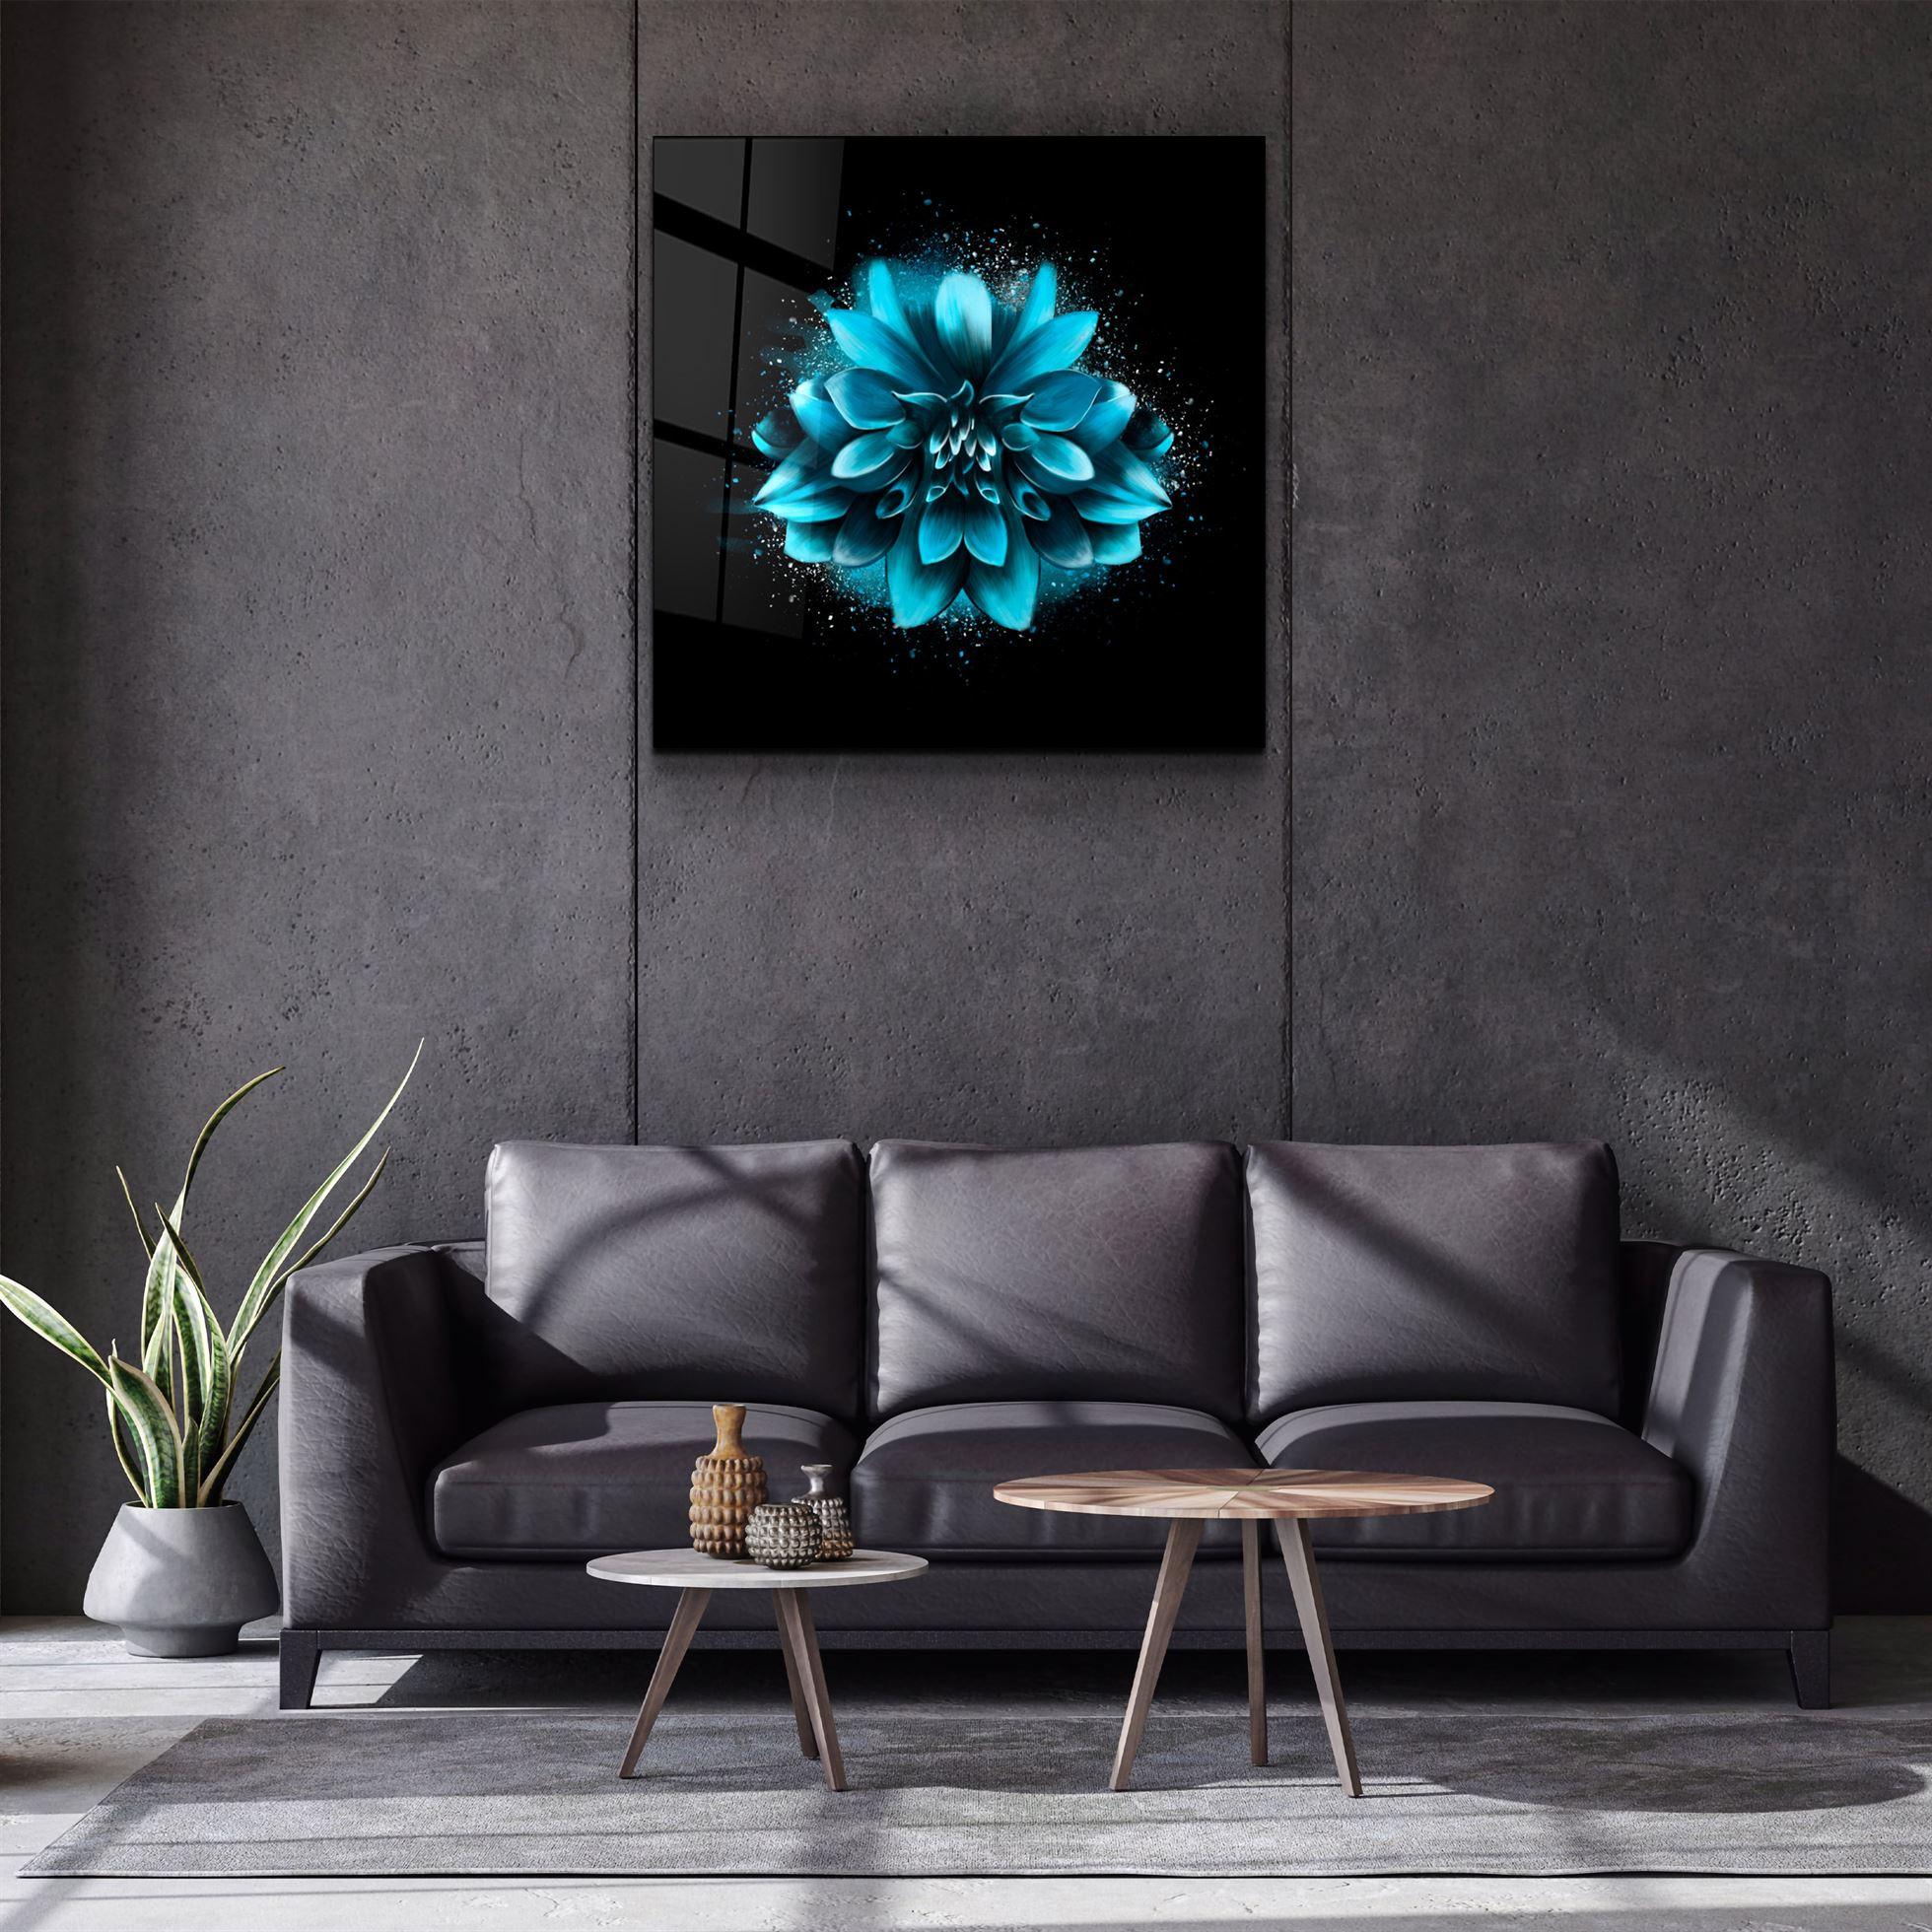 ・"Blue Flower"・Glass Wall Art - ArtDesigna Glass Printing Wall Art